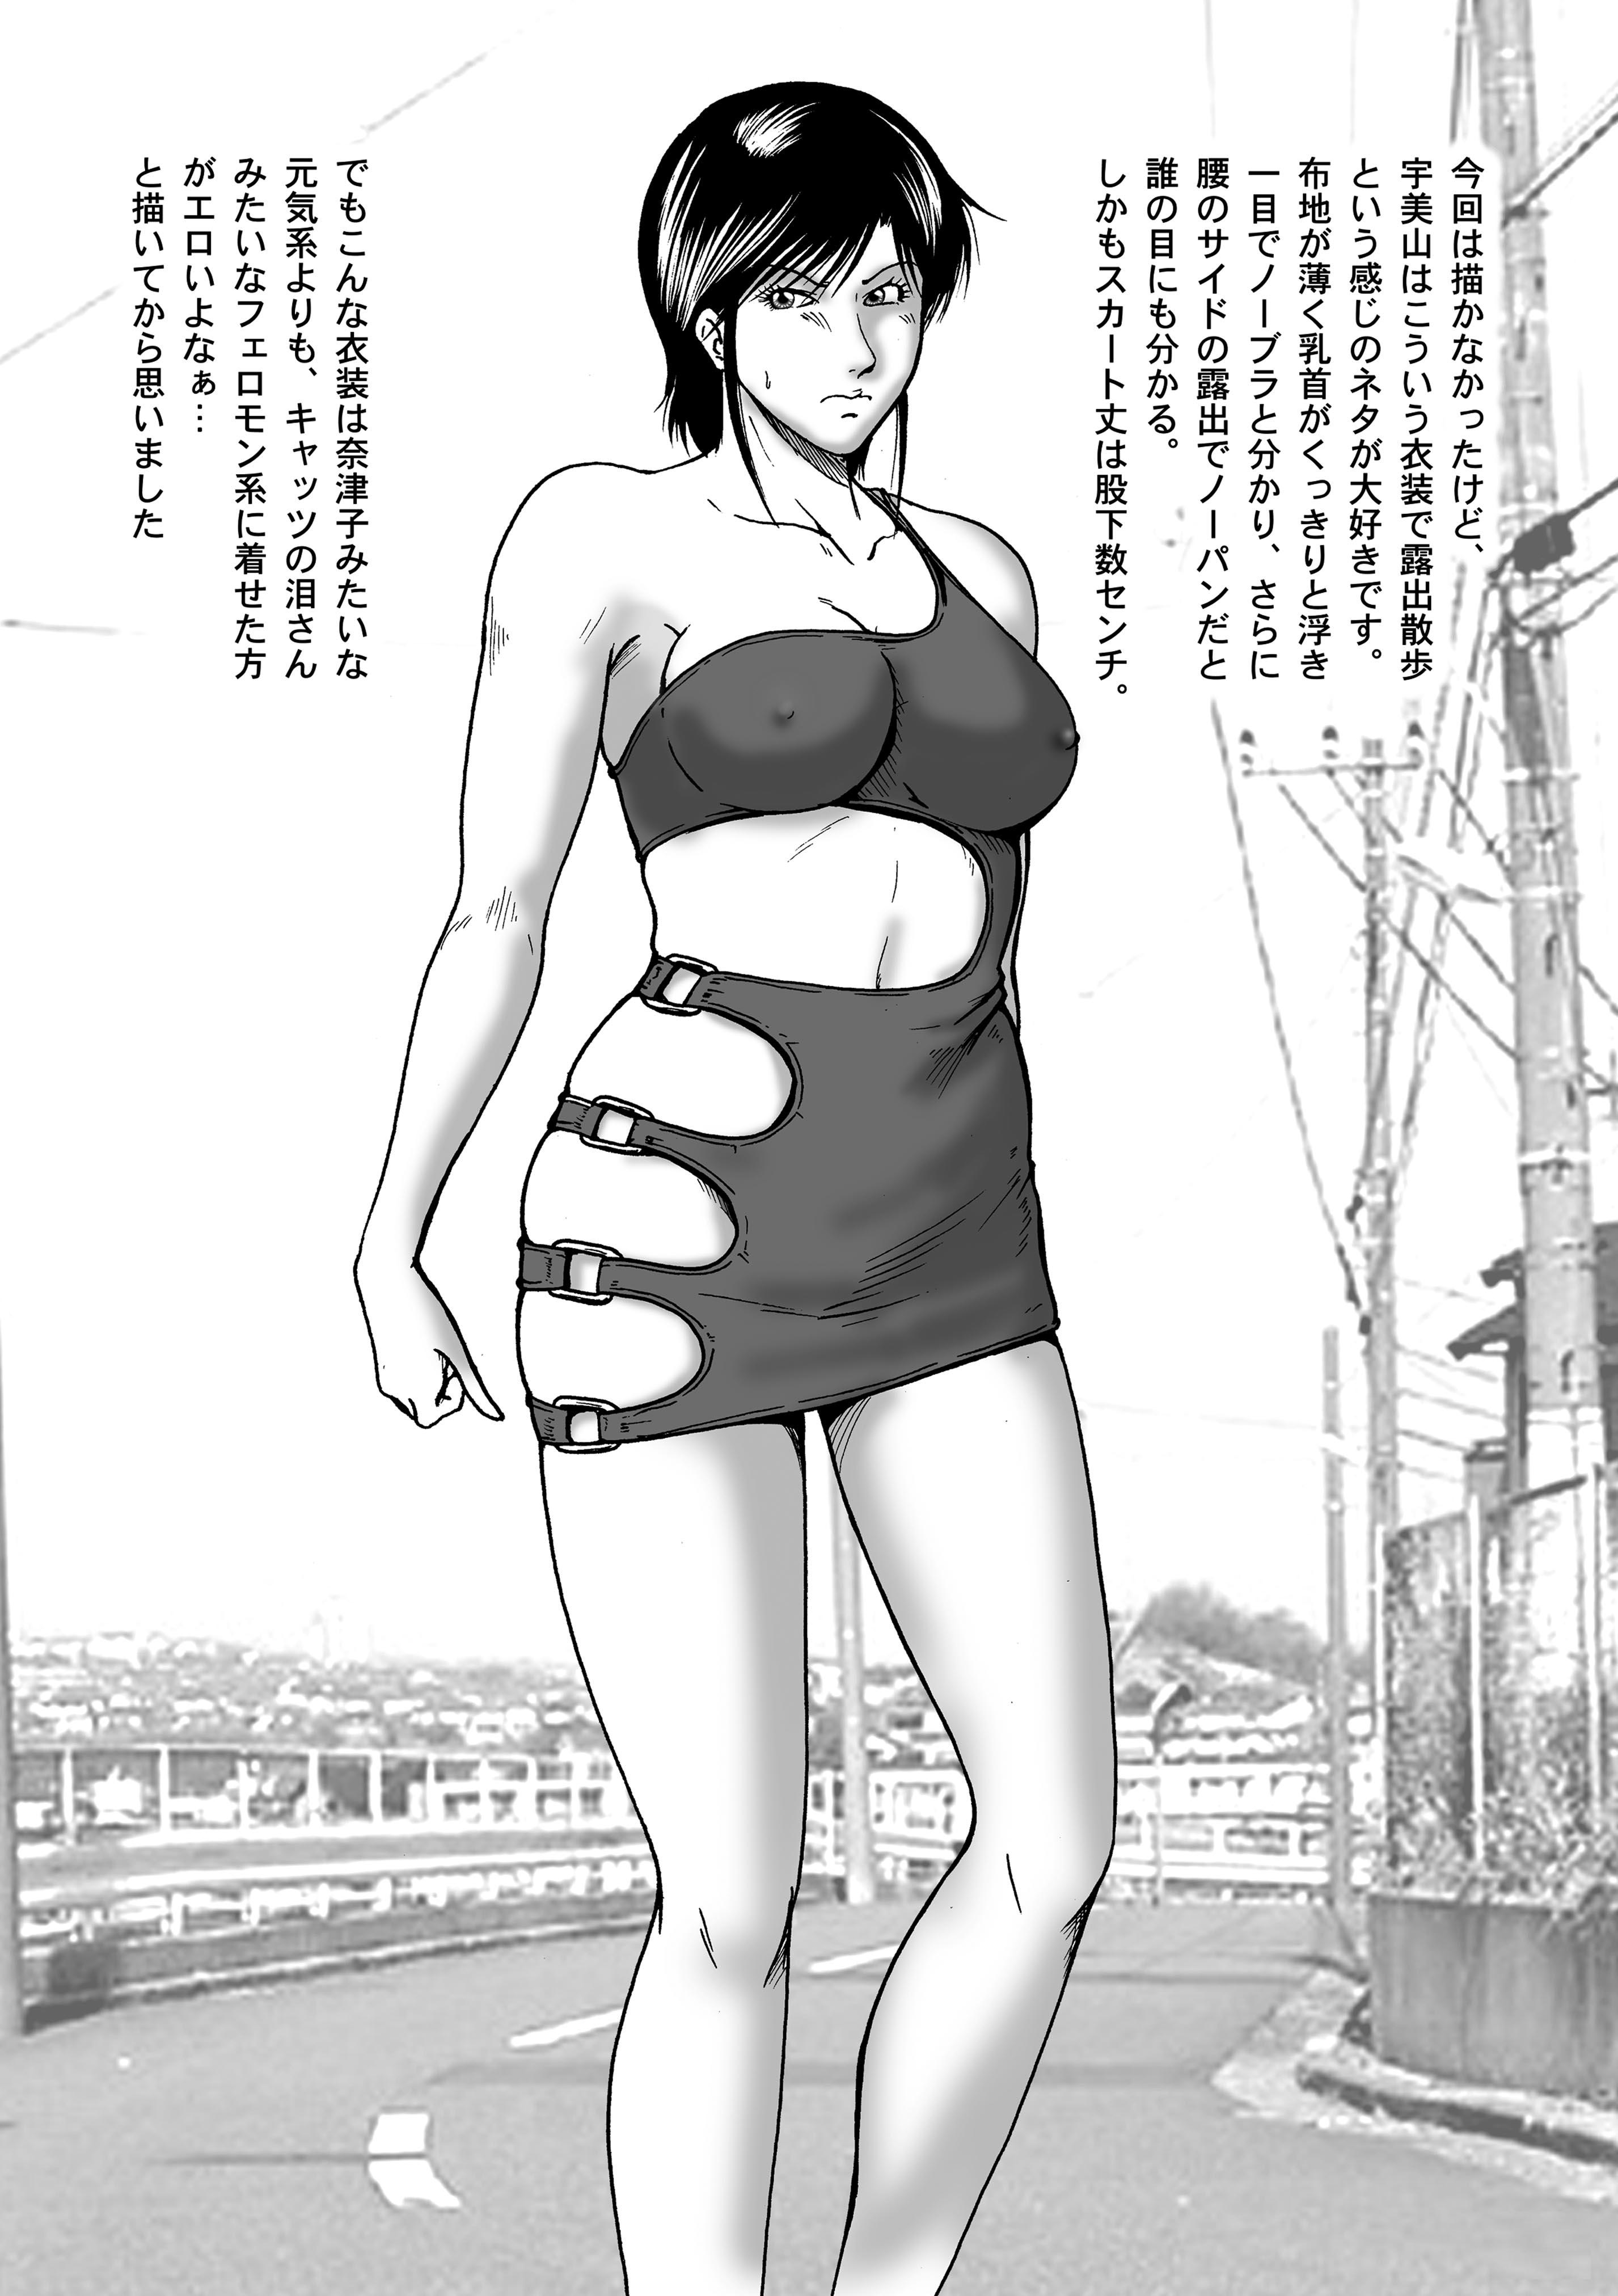 Swim Coach Natsuko - Age 28 22